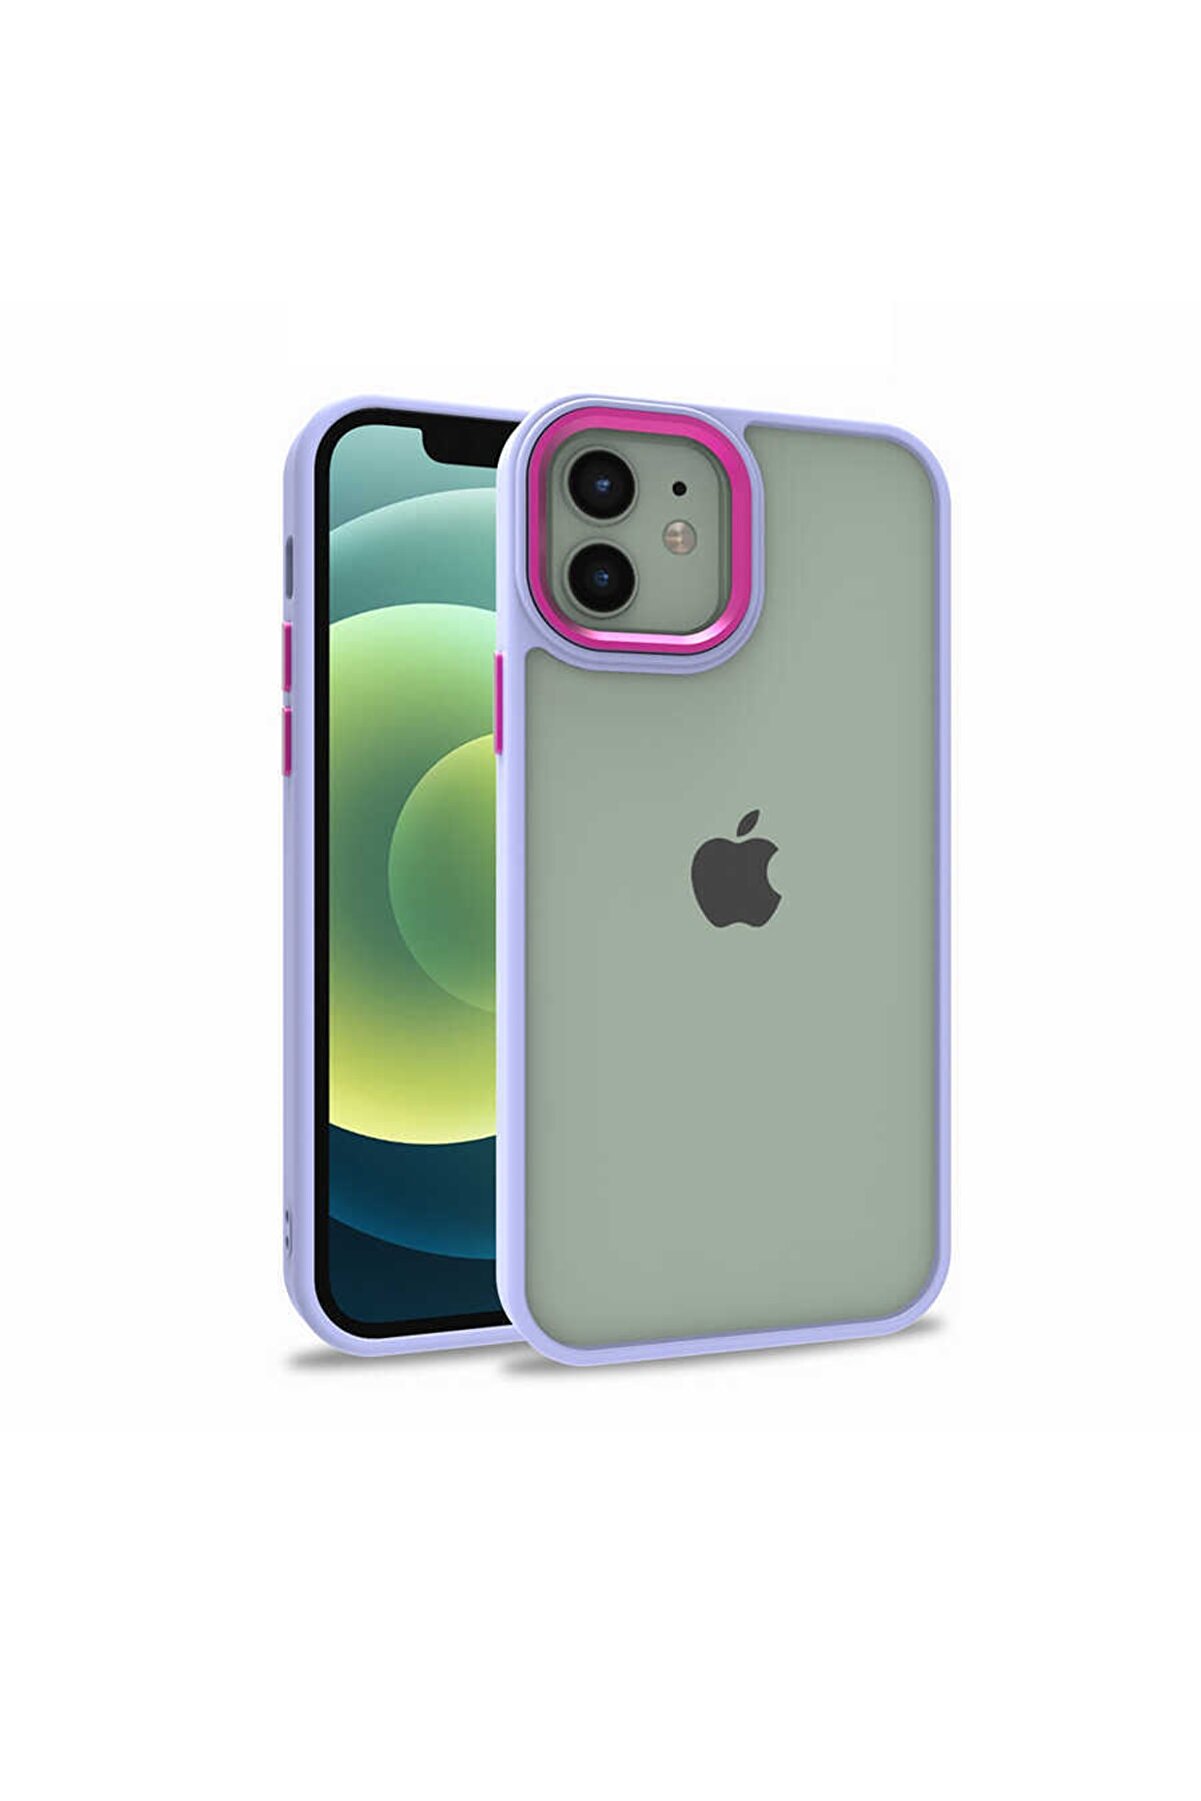 Fibaks Apple Iphone 12 Uyumlu Kılıf Arkası Şeffaf Köşeleri Parlak Renkli Işlemeli Kapak